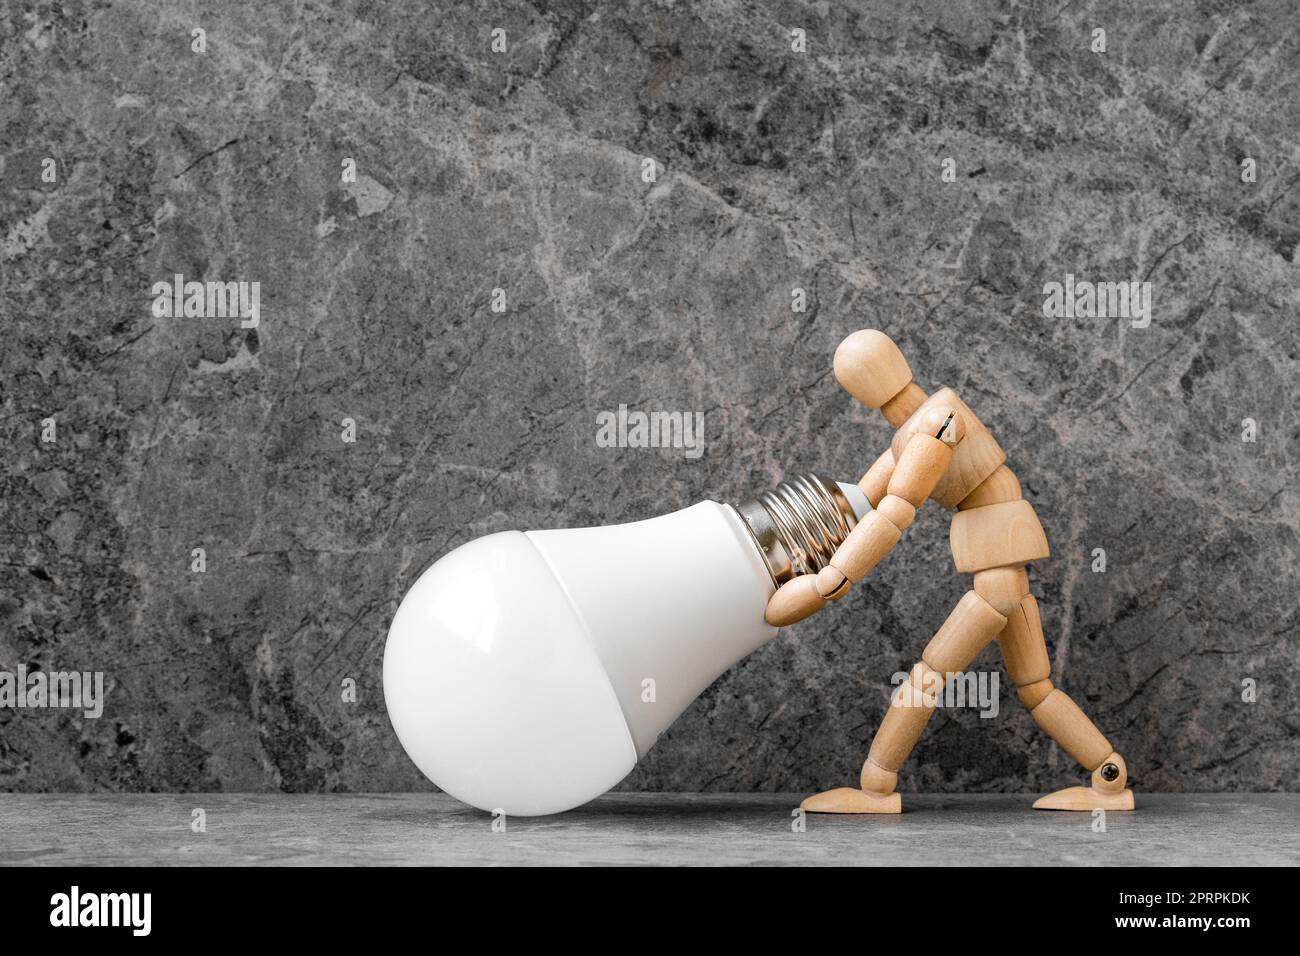 Dummy with economical LED light bulb on stone background Stock Photo